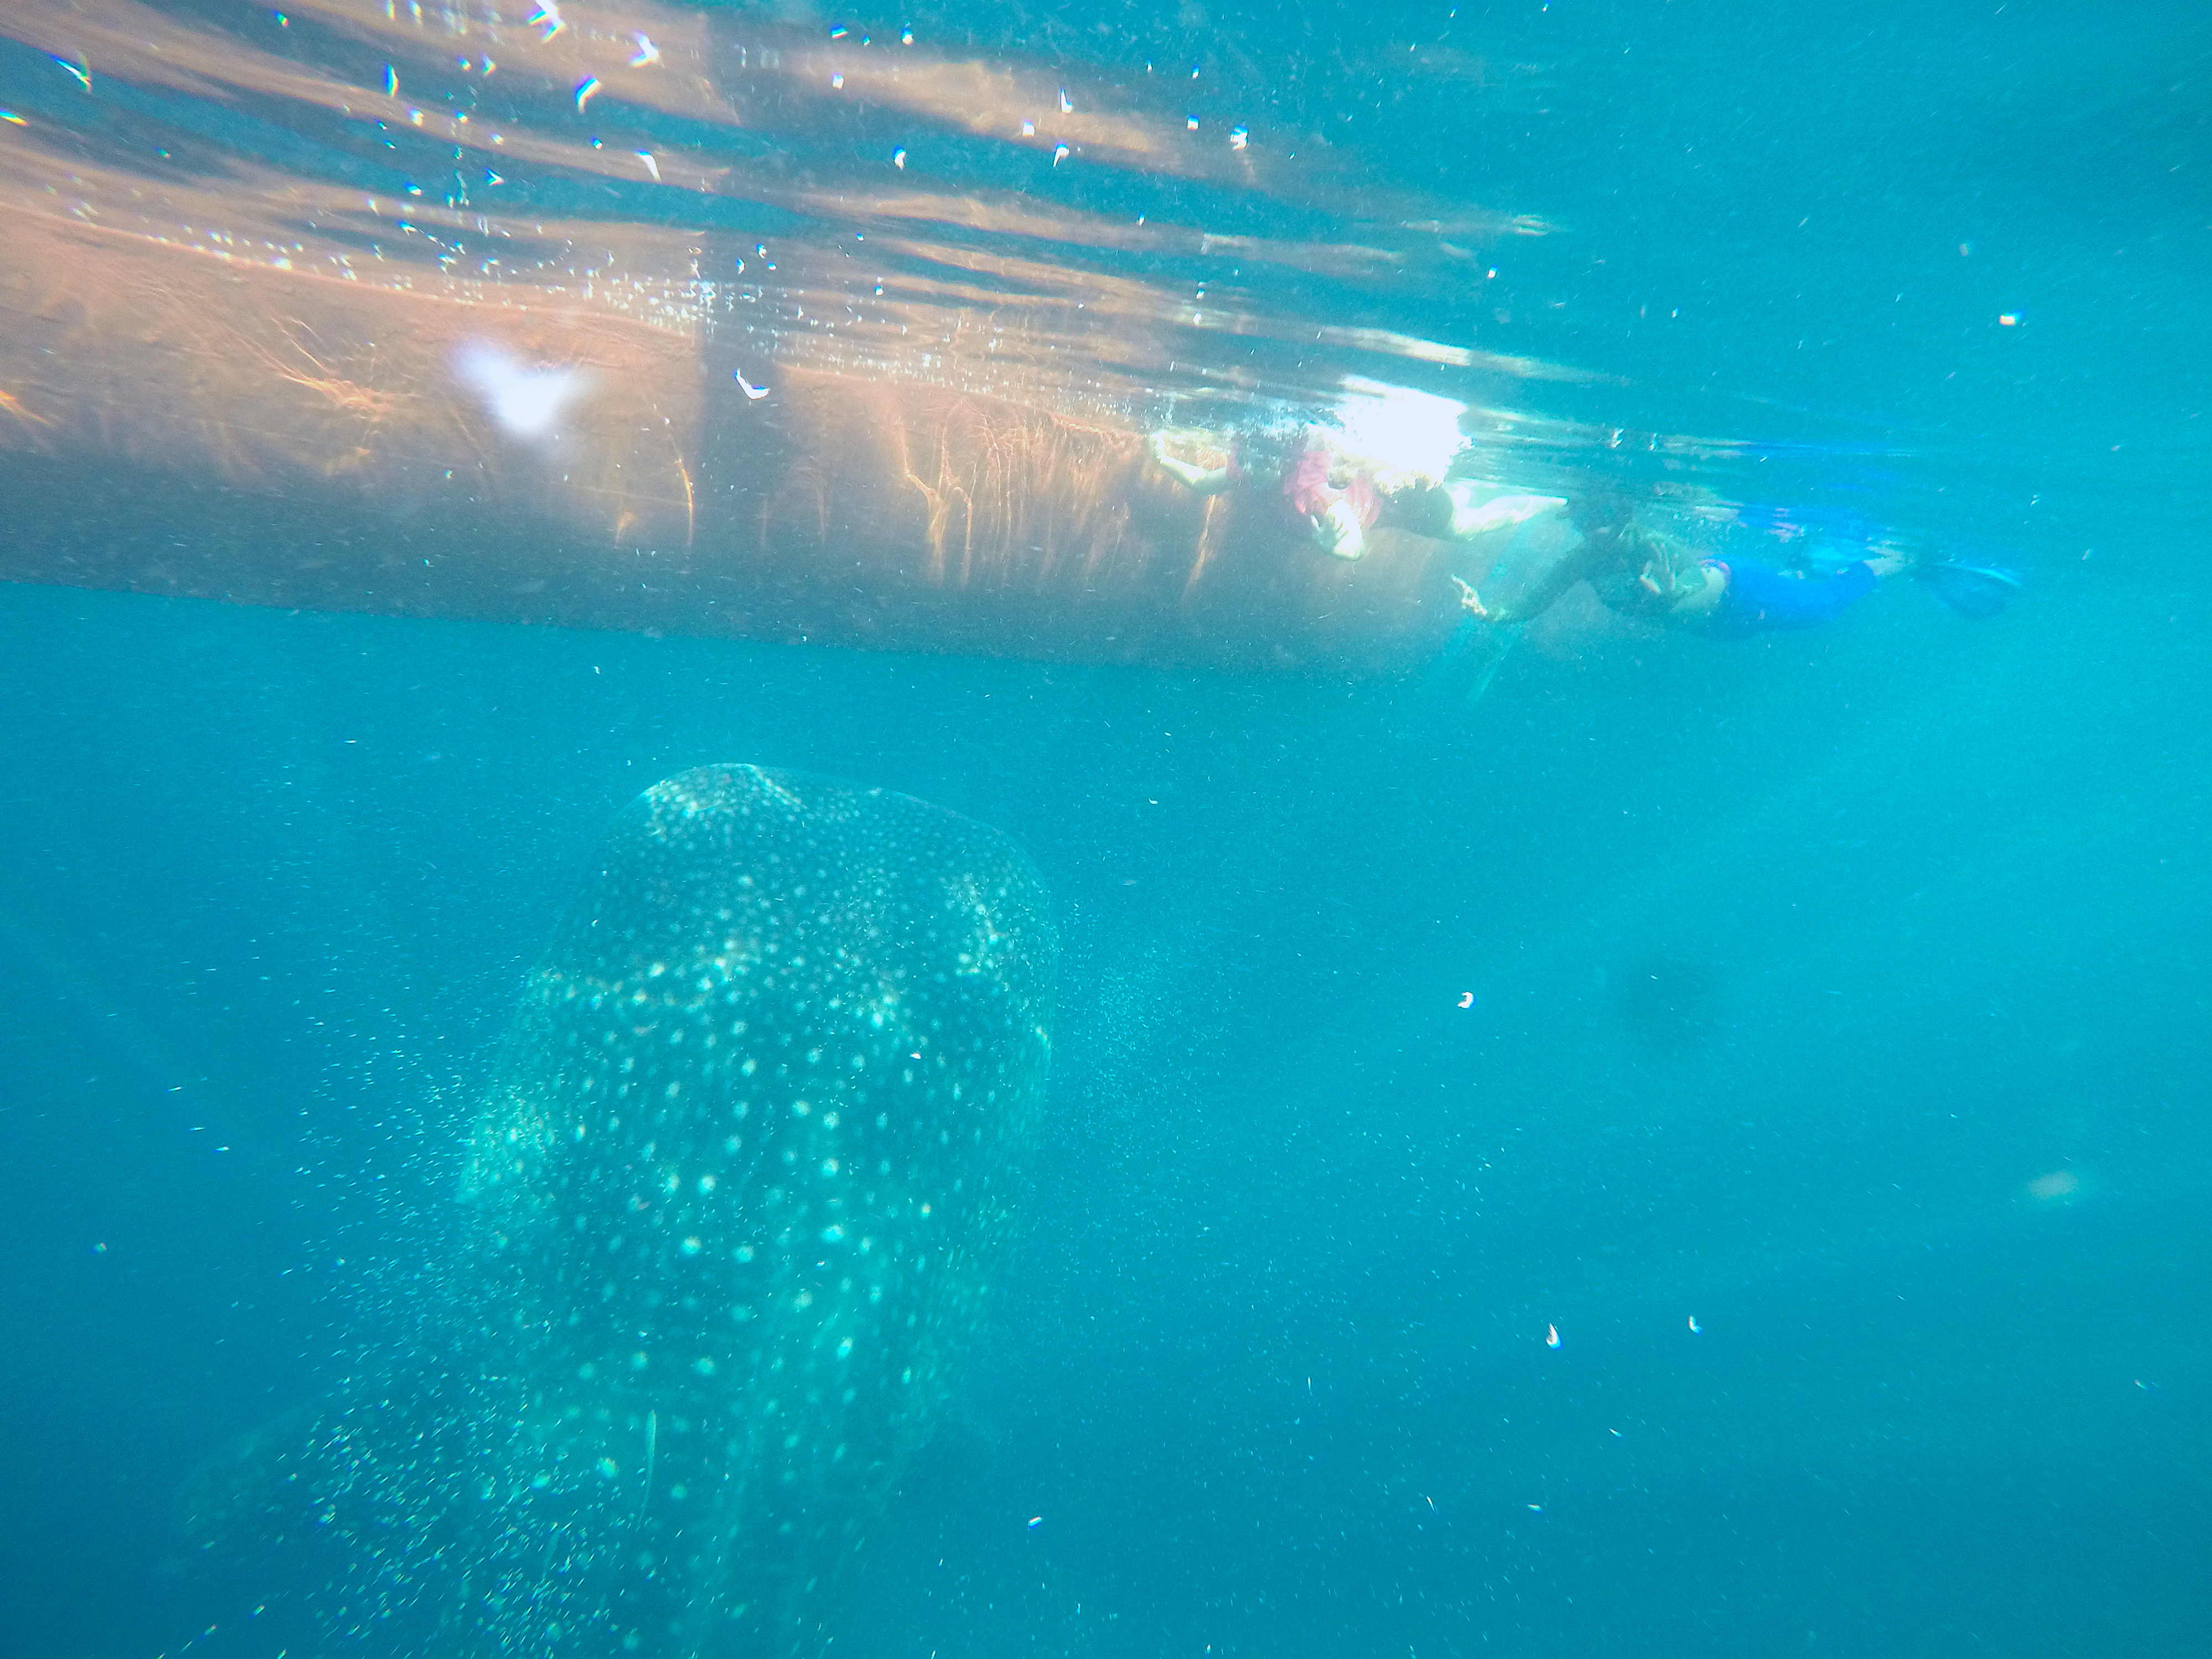 Aktivitas wisata hiu paus di perairan Teluk Saleh, Desa Labuhan Jambu, Kabupaten Sumbawa, NTB. Conservation International Indonesia melakukan pendampingan pengembangan ekowisata hiu paus yang berkelanjutan di Teluk Saleh | Foto: CI Indonesia/Mongabay Indonesia